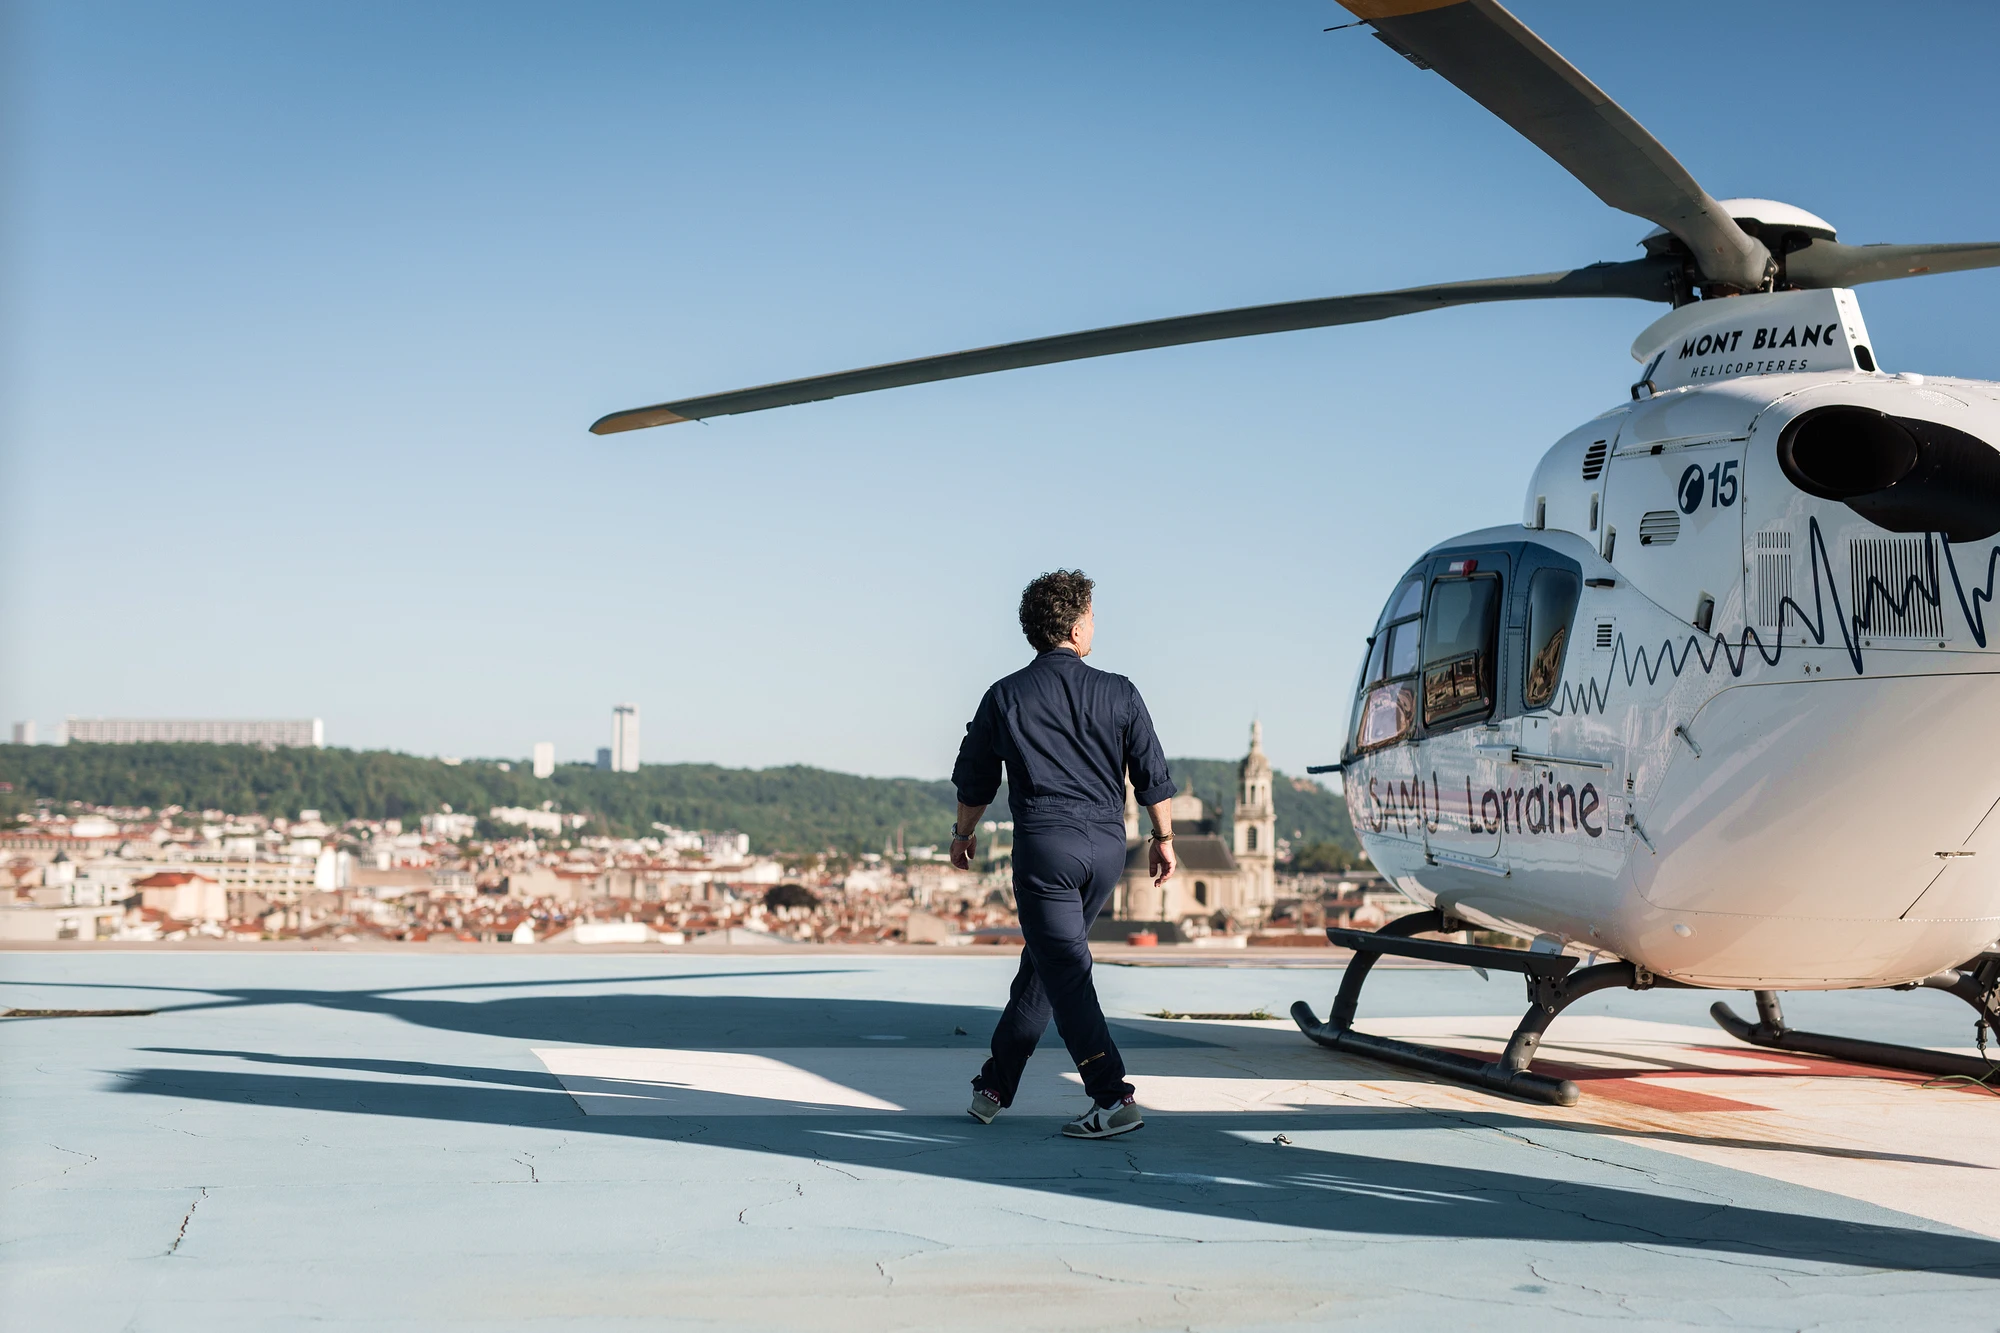 photographe nancy pilote helicoptere samu lorraine ec135 cyril bonci f-hnlo 06